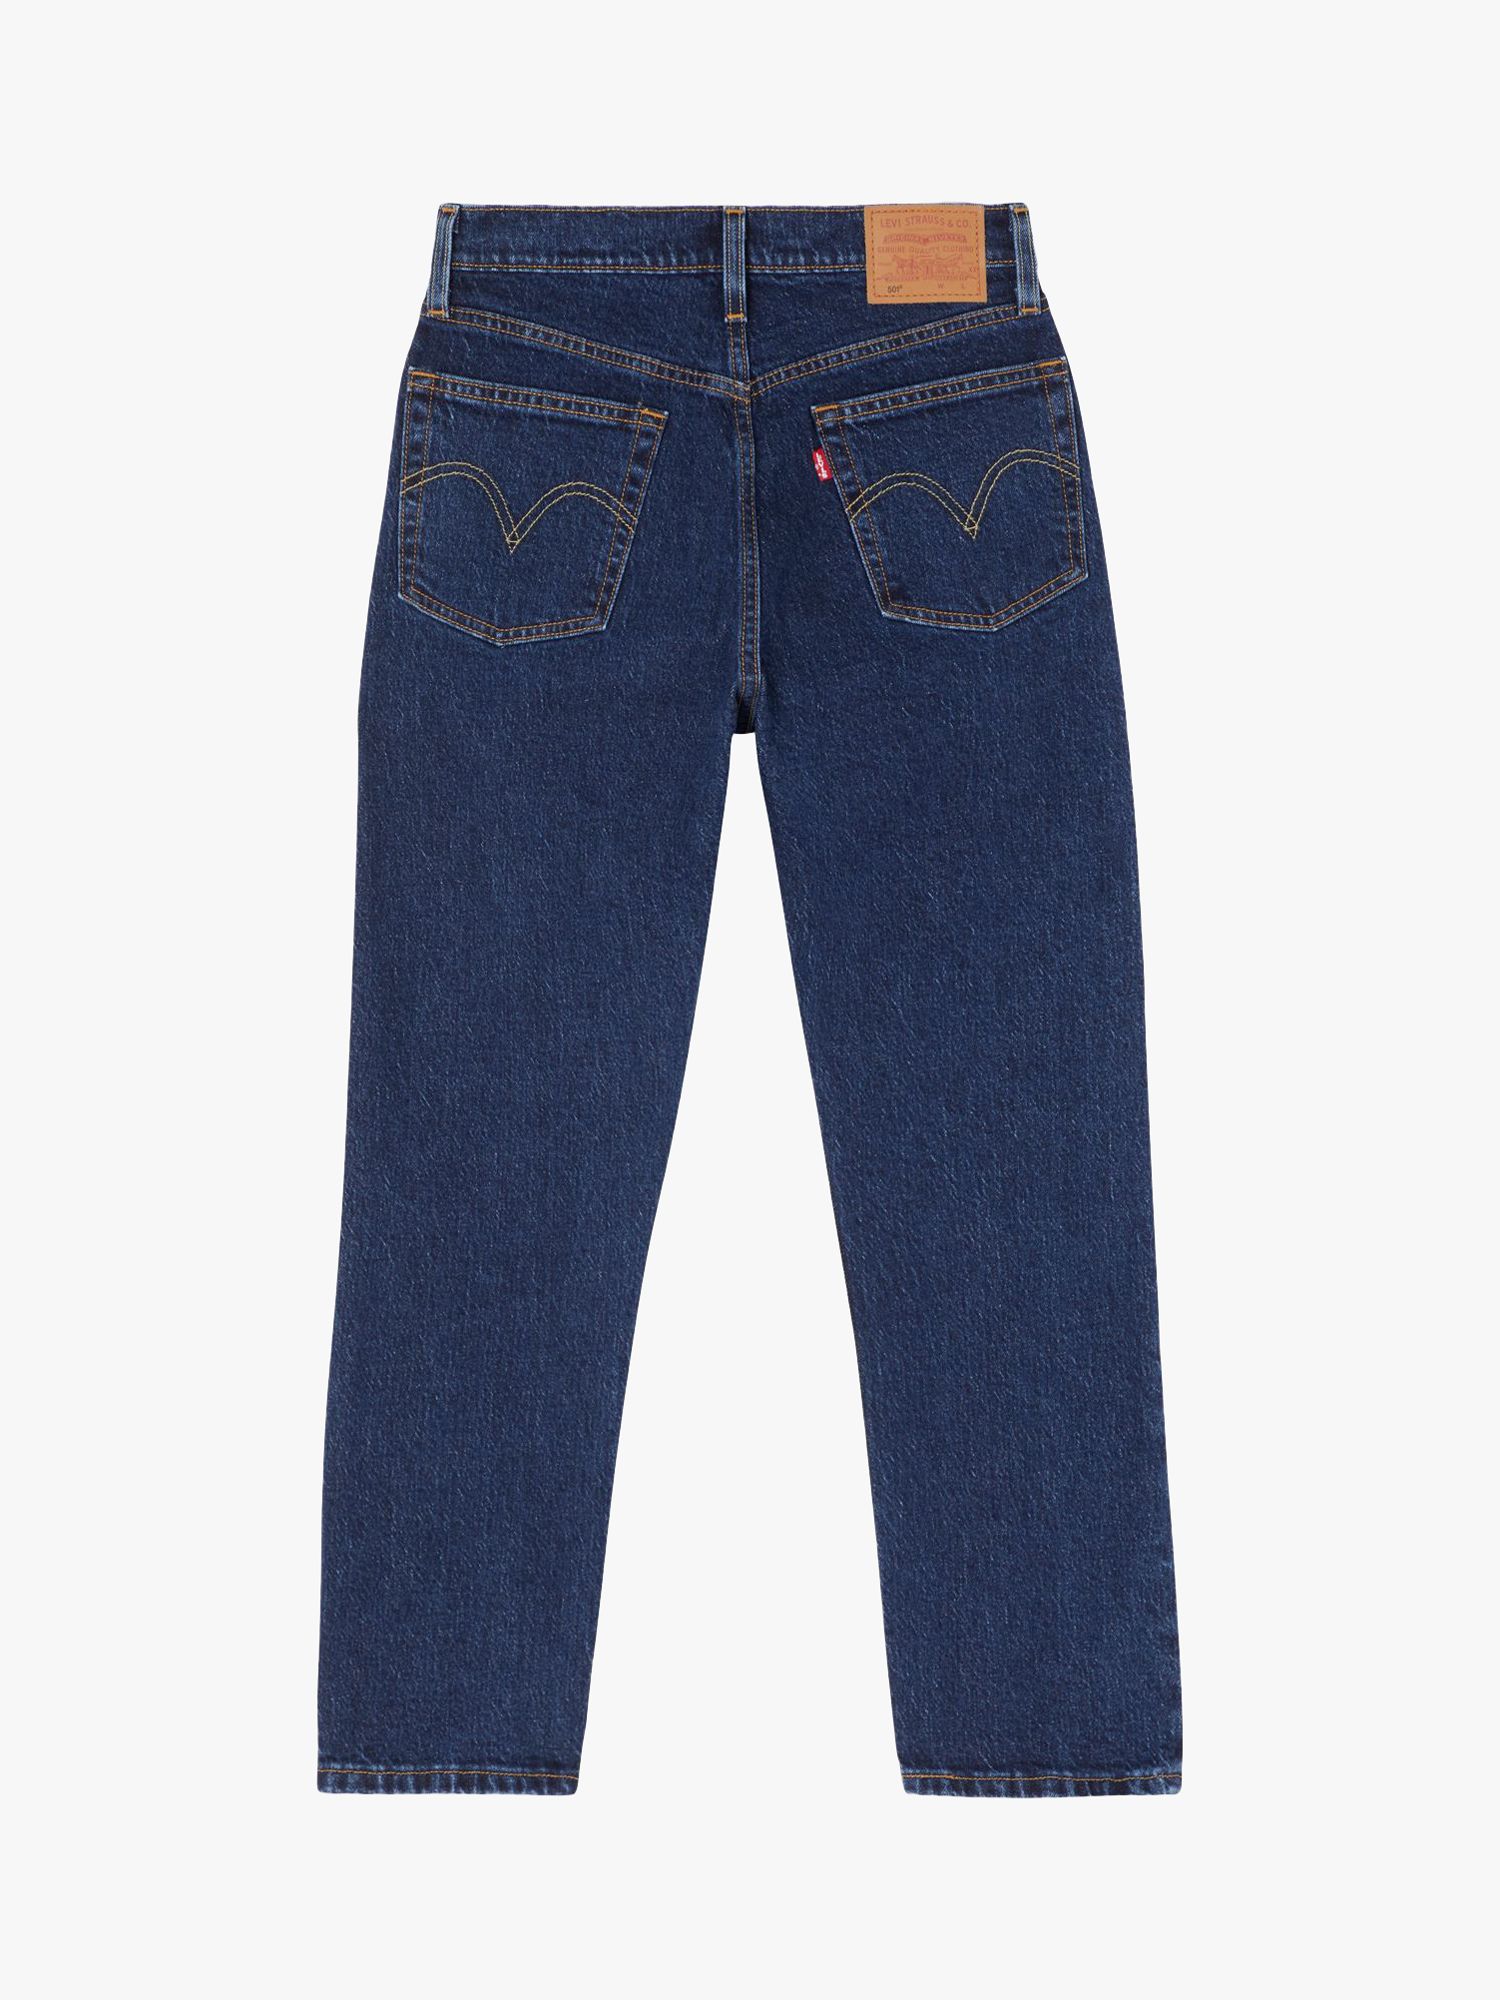 Levi's 501 Cropped Jeans, Salsa Stonewash, W24/L26